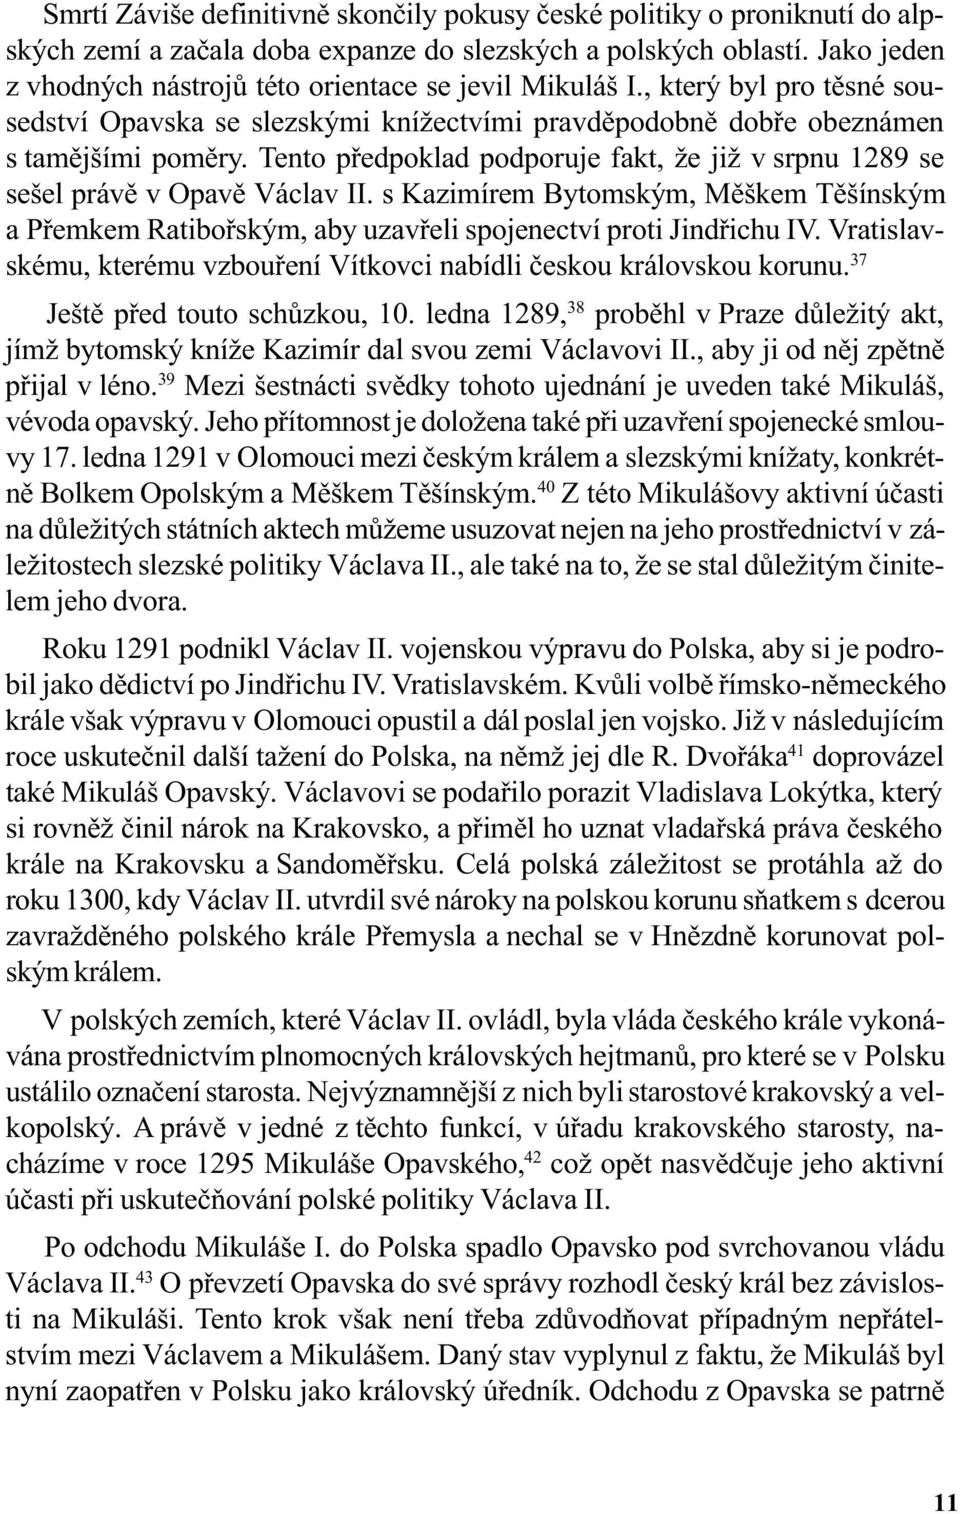 Tento pøedpoklad podporuje fakt, že již v srpnu 1289 se sešel právì v Opavì Václav II. s Kazimírem Bytomským, Mìškem Tìšínským a Pøemkem Ratiboøským, aby uzavøeli spojenectví proti Jindøichu IV.